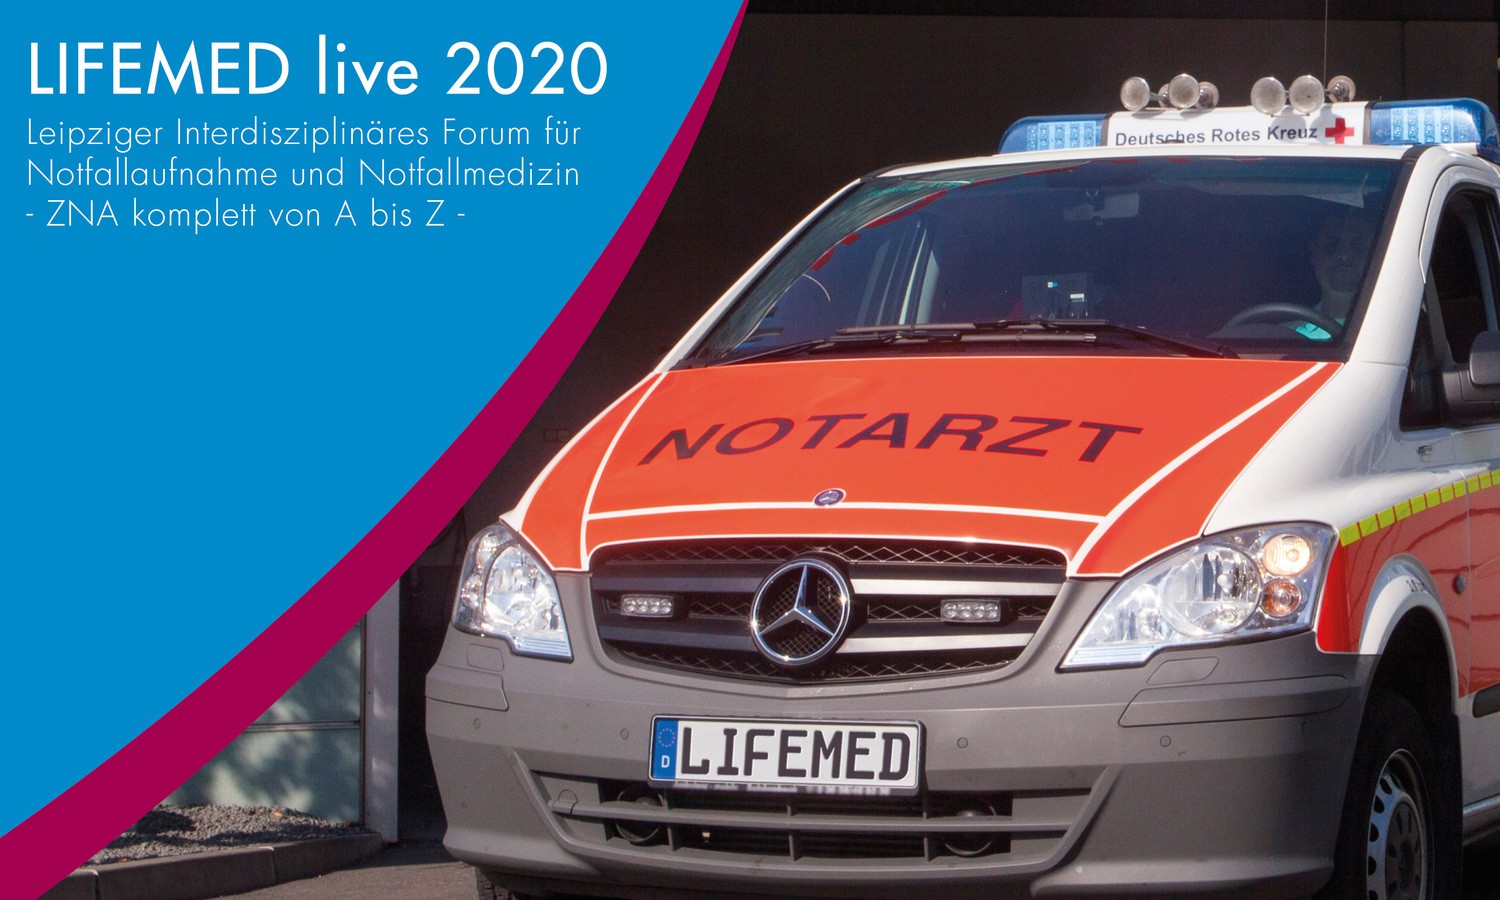 LIFEMED 2020 - Das Leipziger Interdisziplinäre Forum für Notfallaufnahmen und Notfallmedizin findet in diesem Jahr nur via Internet statt.